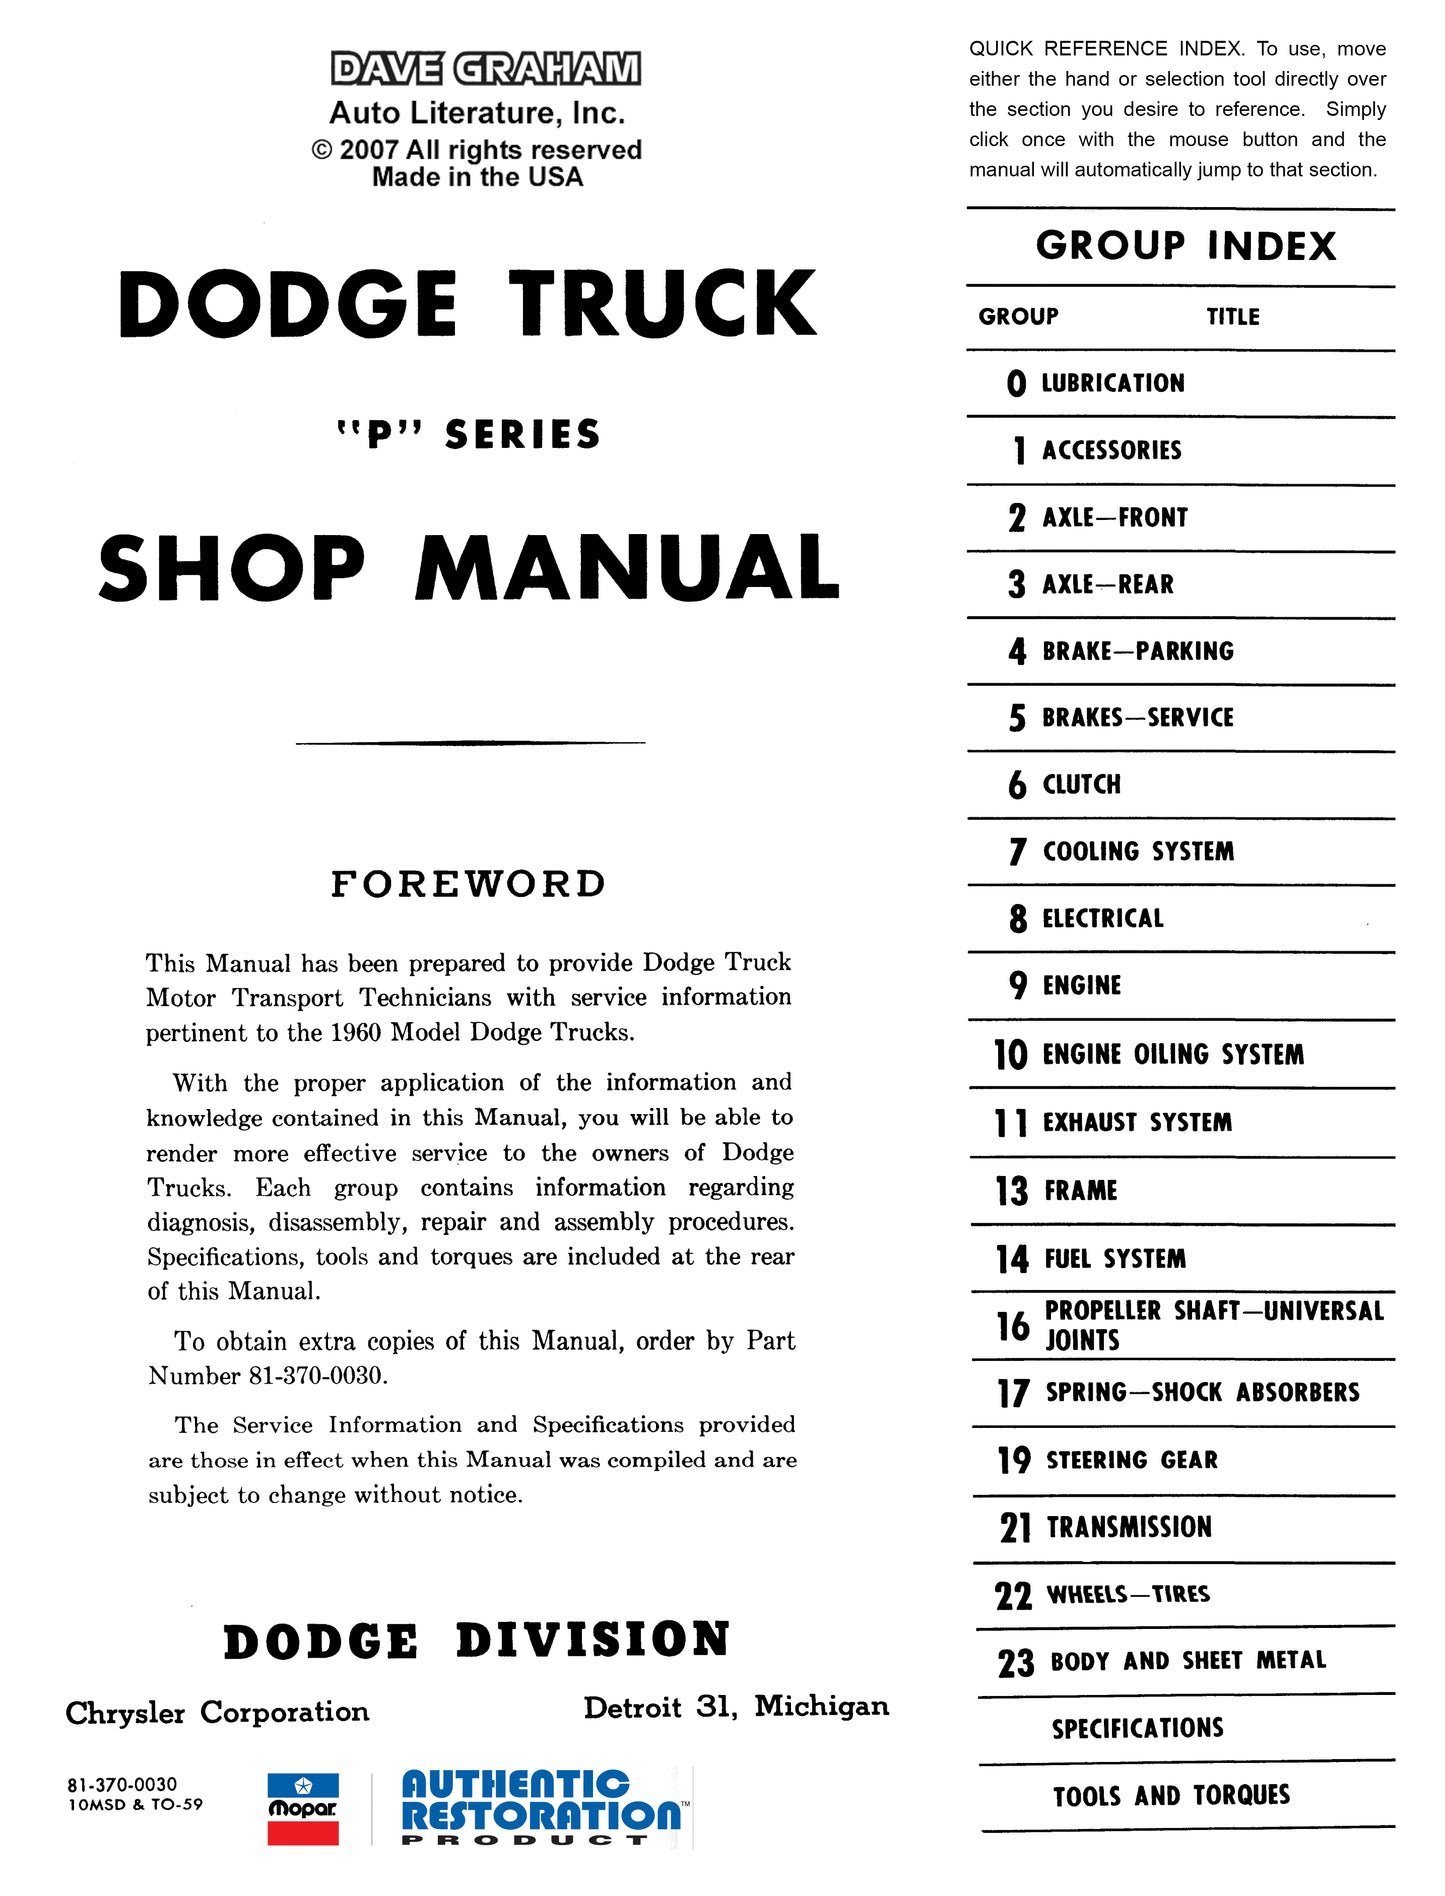 1960-1961 Dodge Truck Shop Manual - All Models